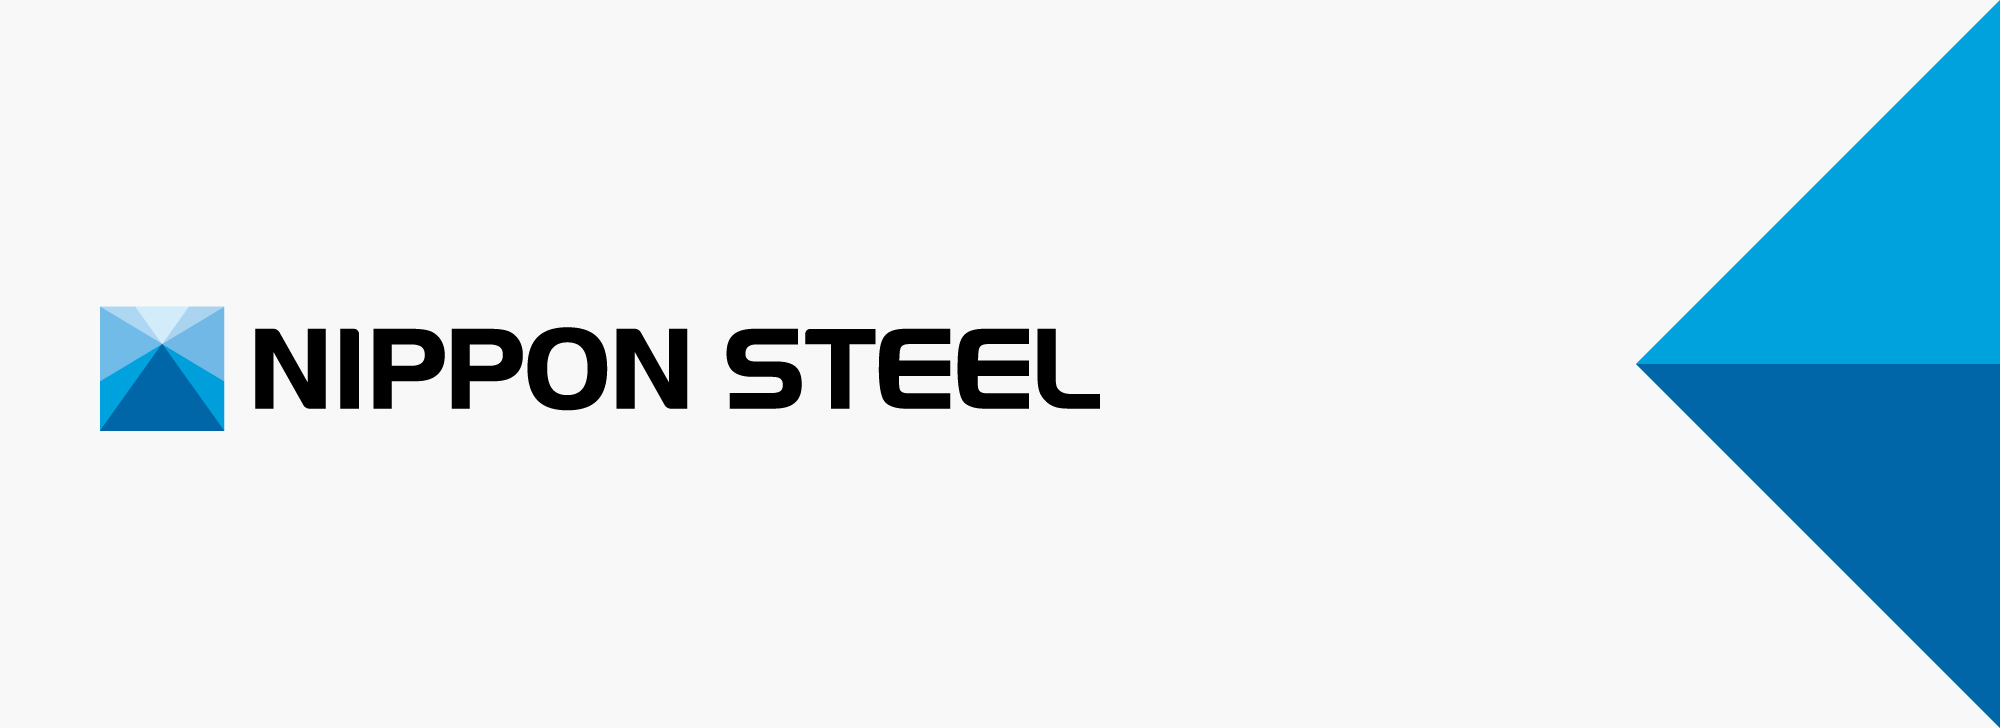 Nippon Steel получила сертификаты EcoLeaf на стальные листы